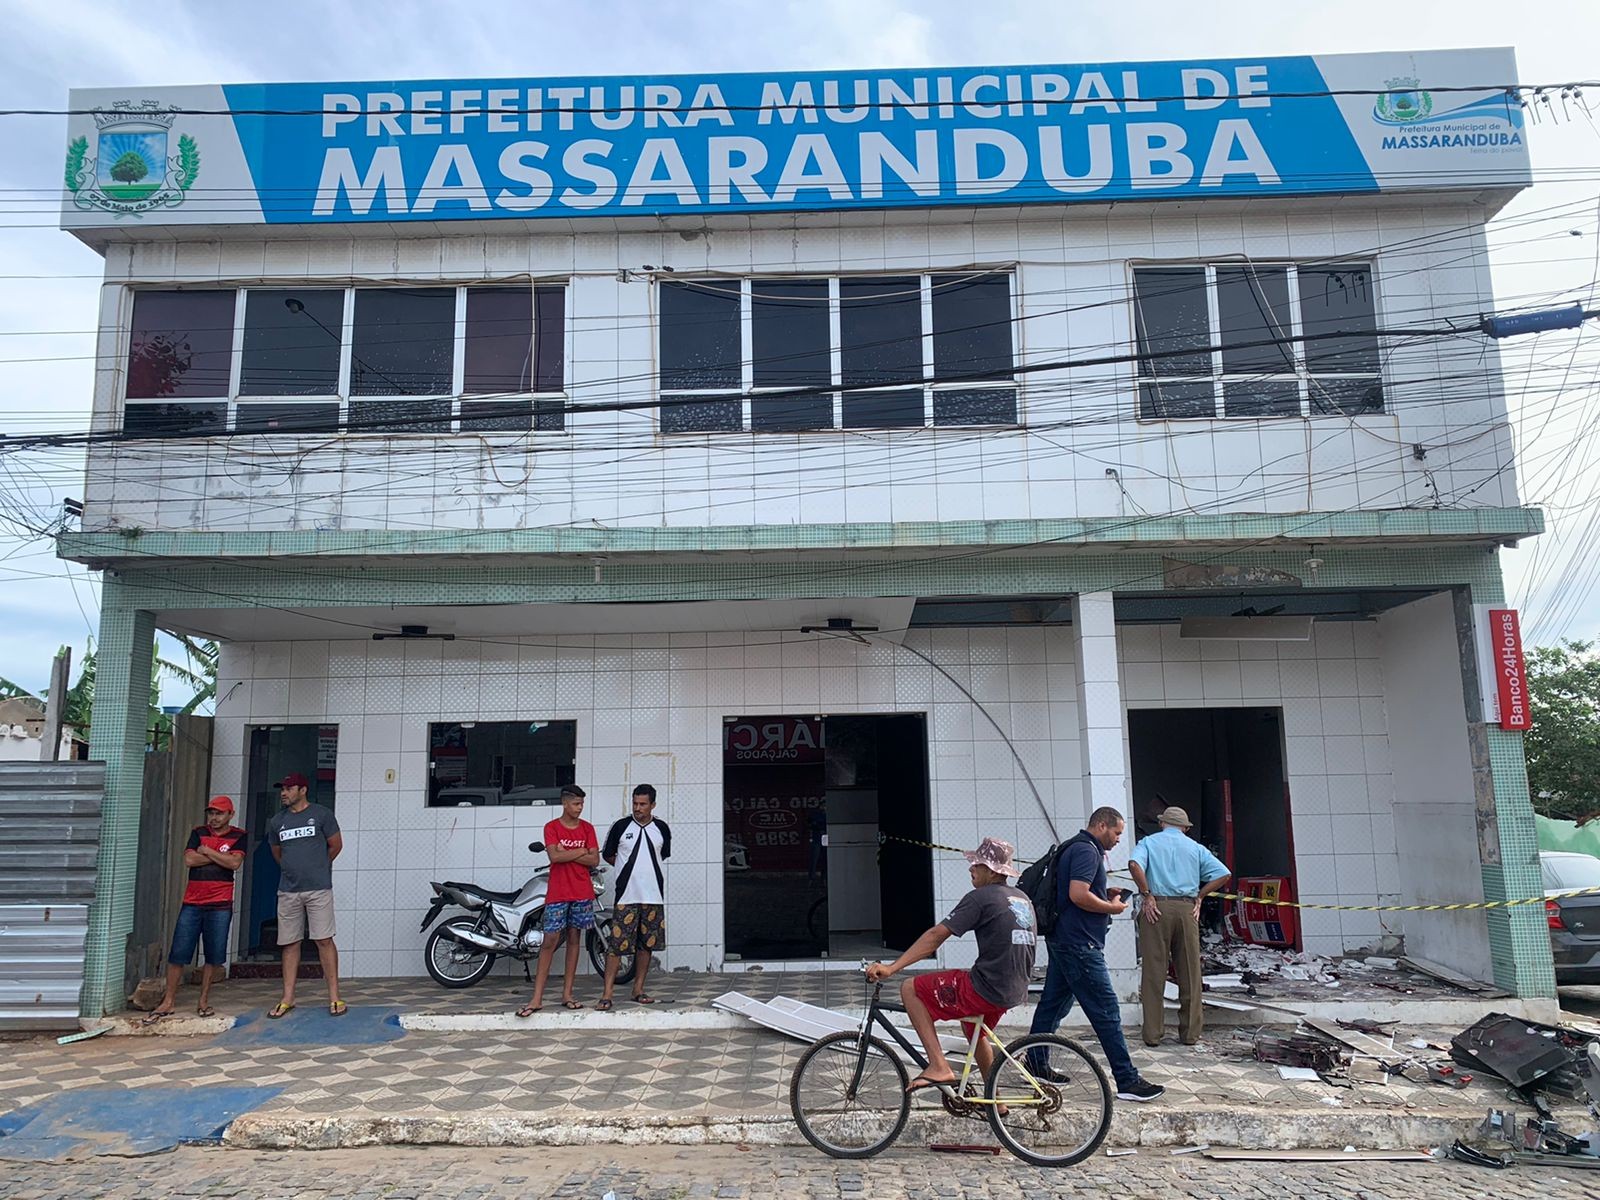 
Eleitores de Massaranduba, na PB, vão às urnas para escolher novo prefeito em eleição suplementar 